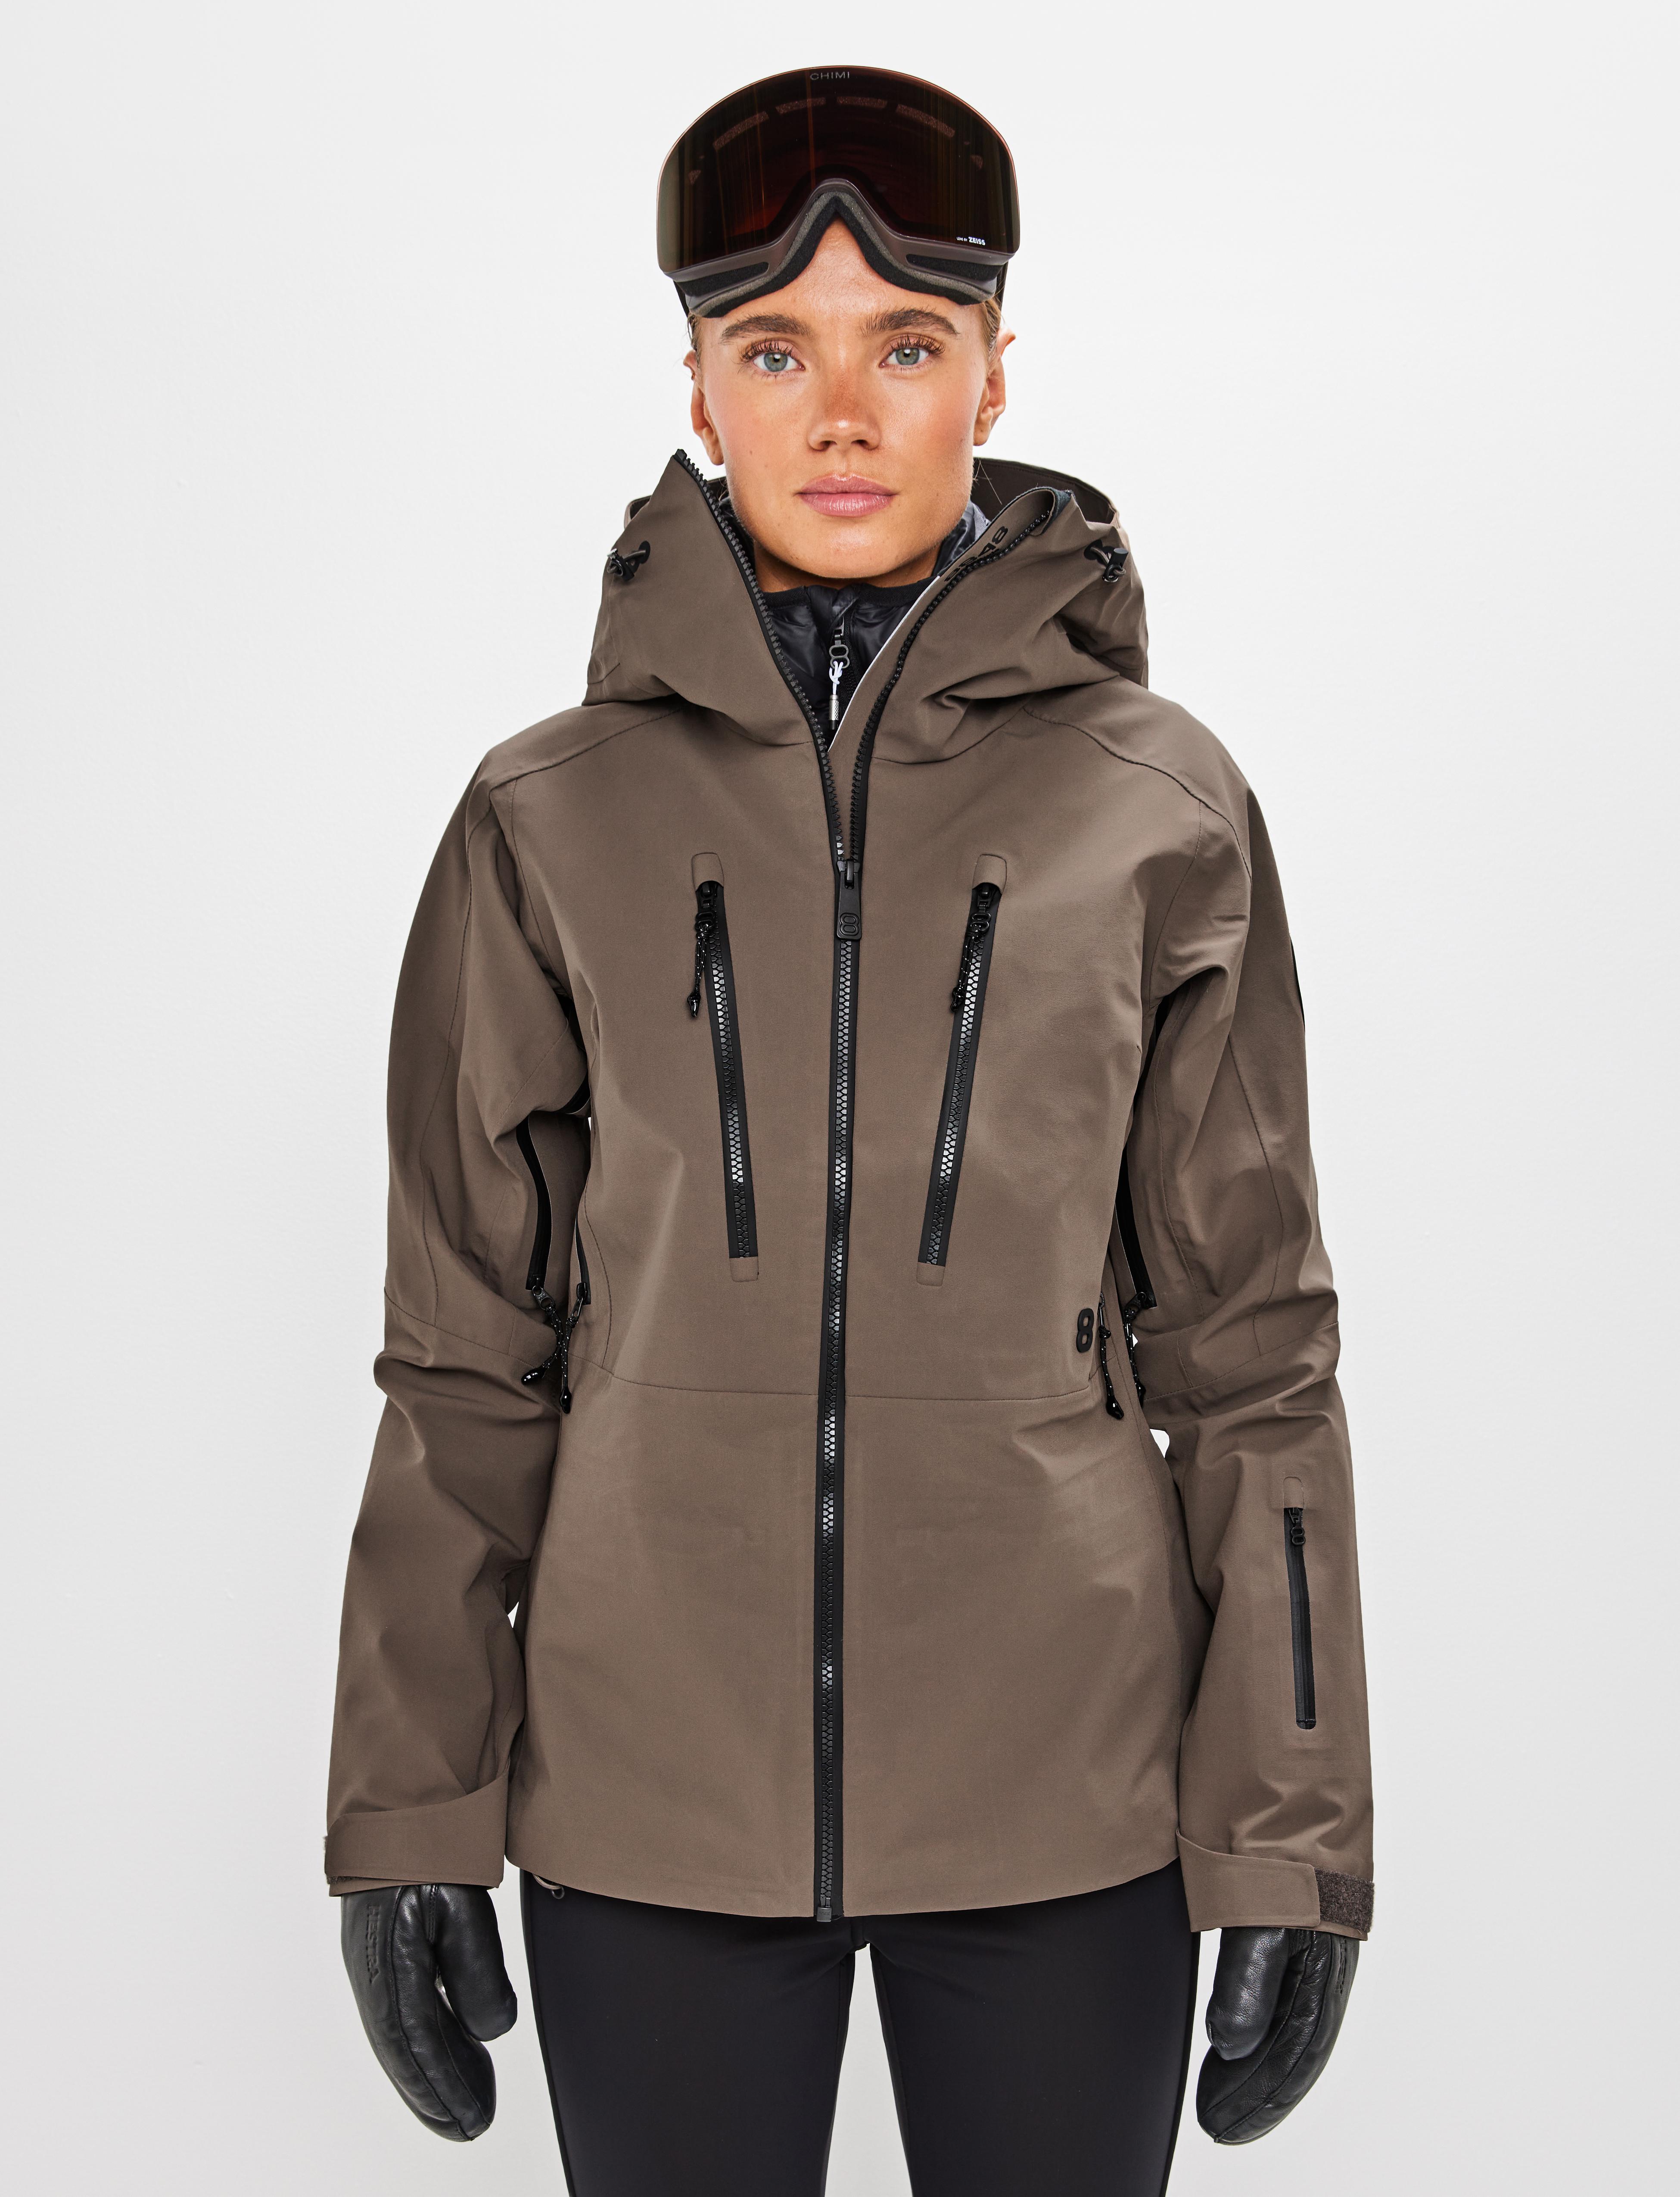 Pow W 2.0 Jacket Pale Brown - Braun Ski Jacke Damen